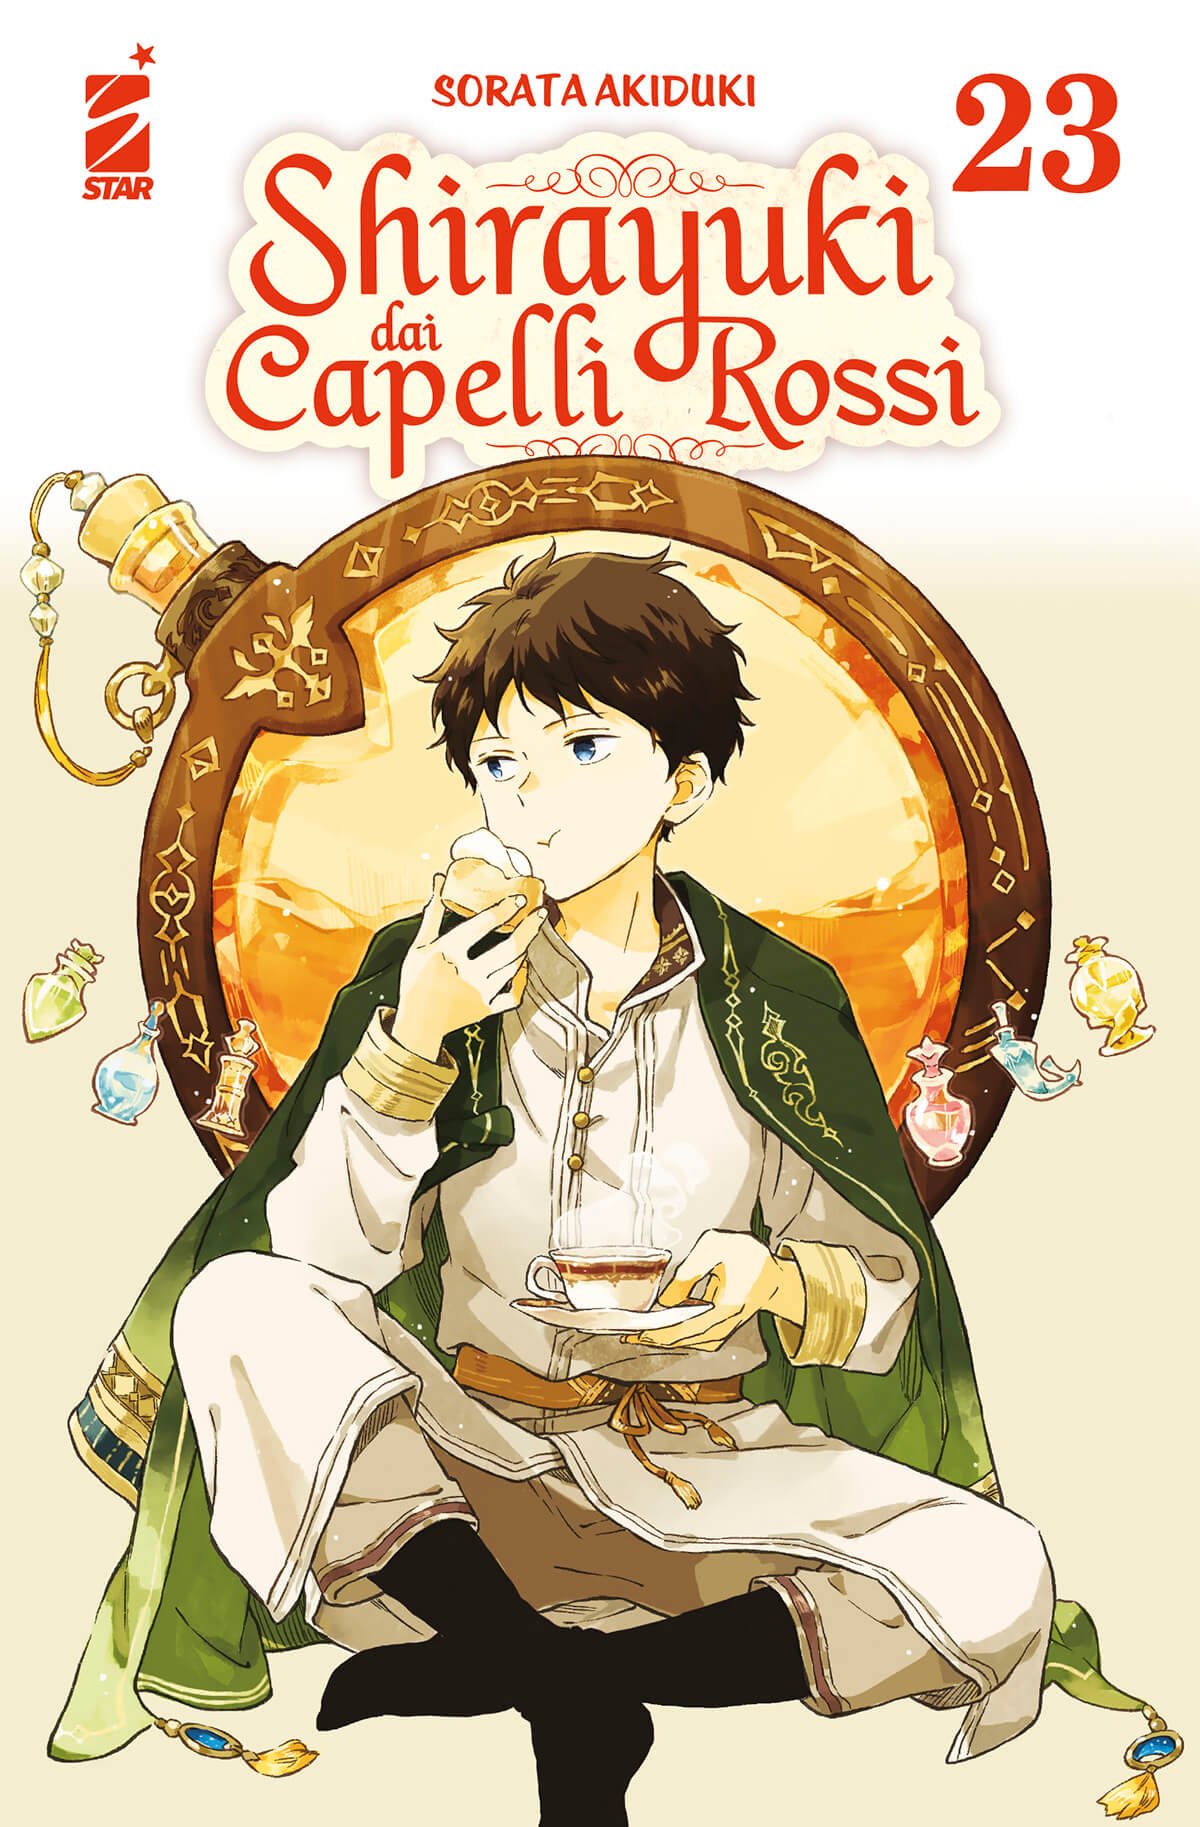 Shirayuki dai Capelli Rossi 23, parmi les sorties mangas Star Comics du 20 septembre 2023.